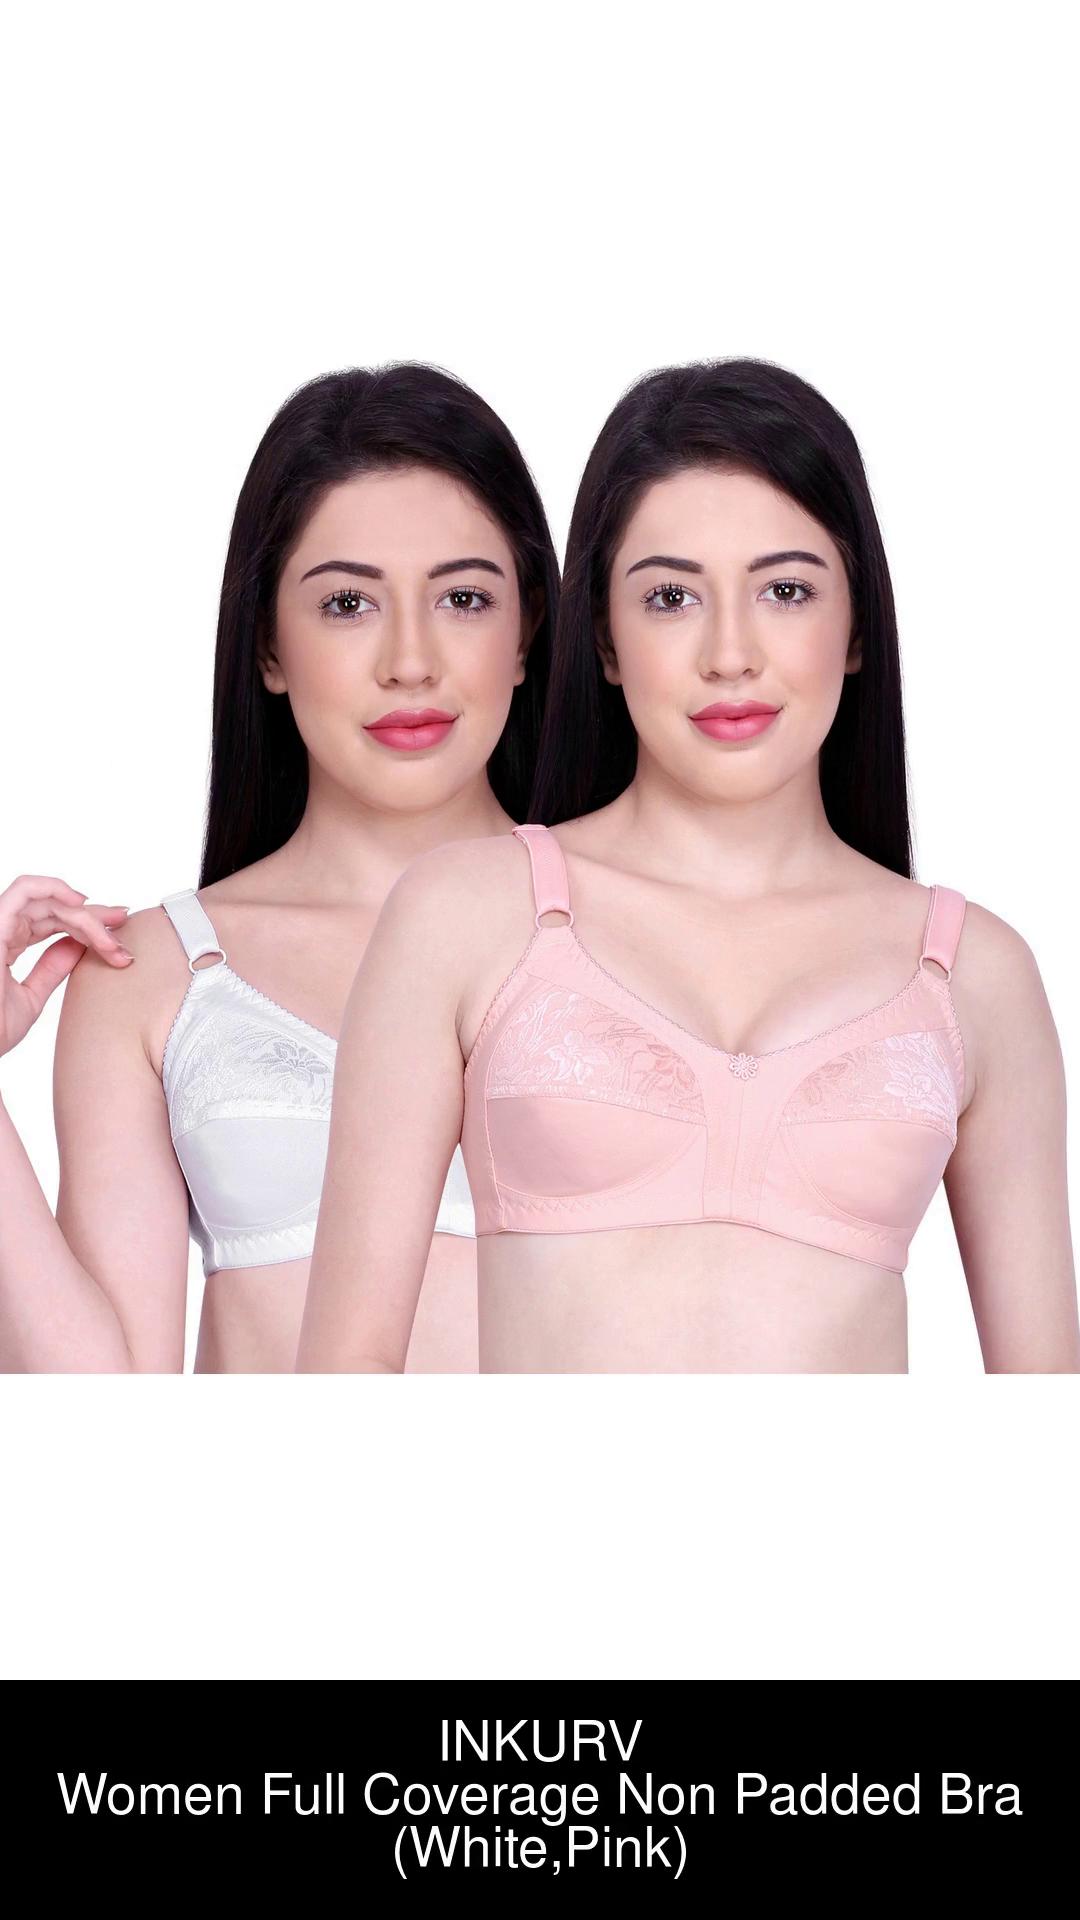 Best Full Coverage bra for daily use for women in India, Inkurv Bra –  INKURV